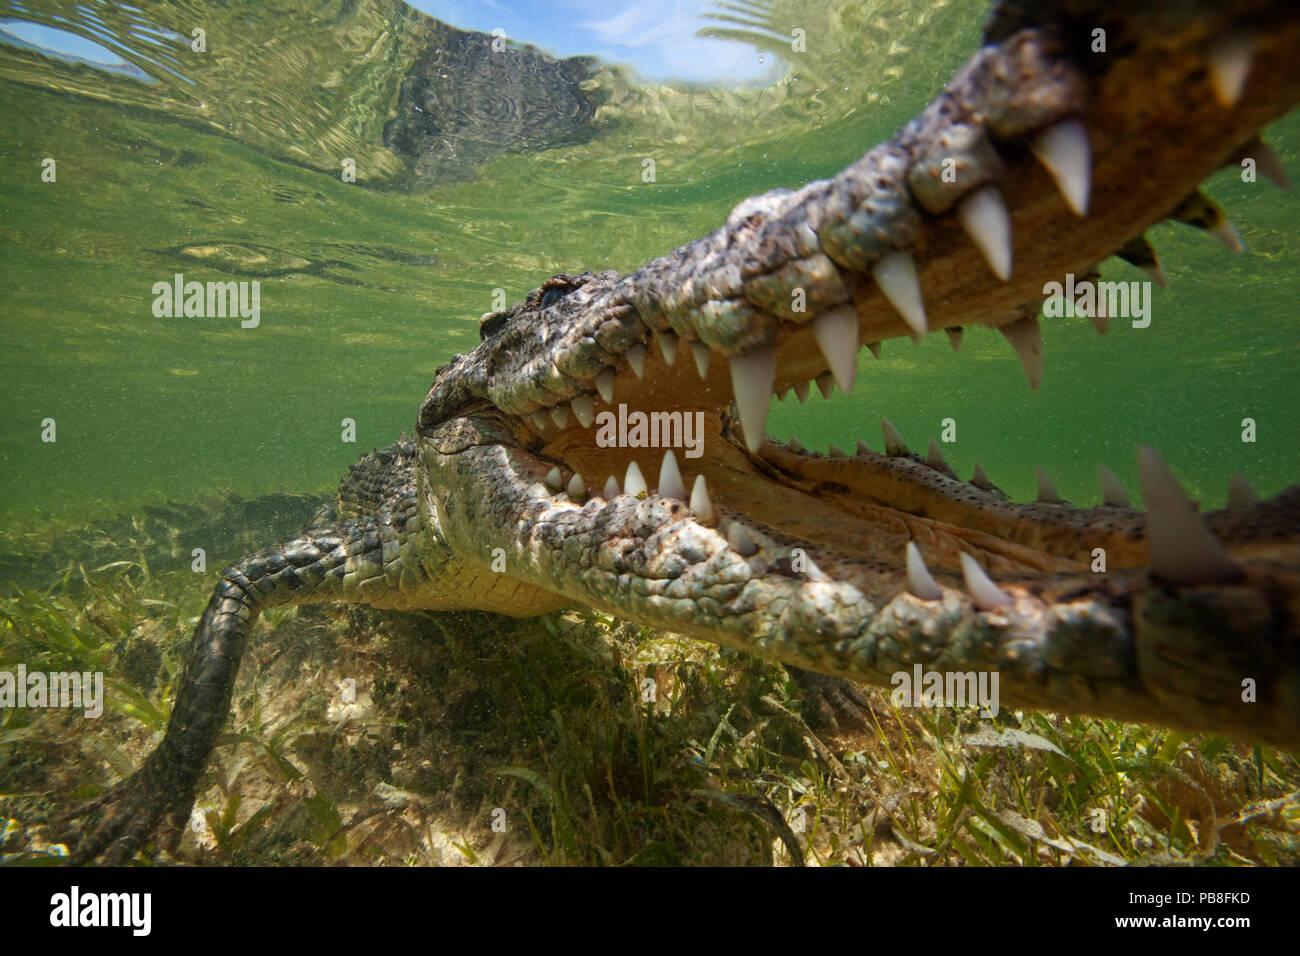 Crocodile (Crocodylus acutus) extreme close up avec mâchoires ouvertes, la Réserve de biosphère de Banco Chinchorro, Caraïbes, Mexique Banque D'Images